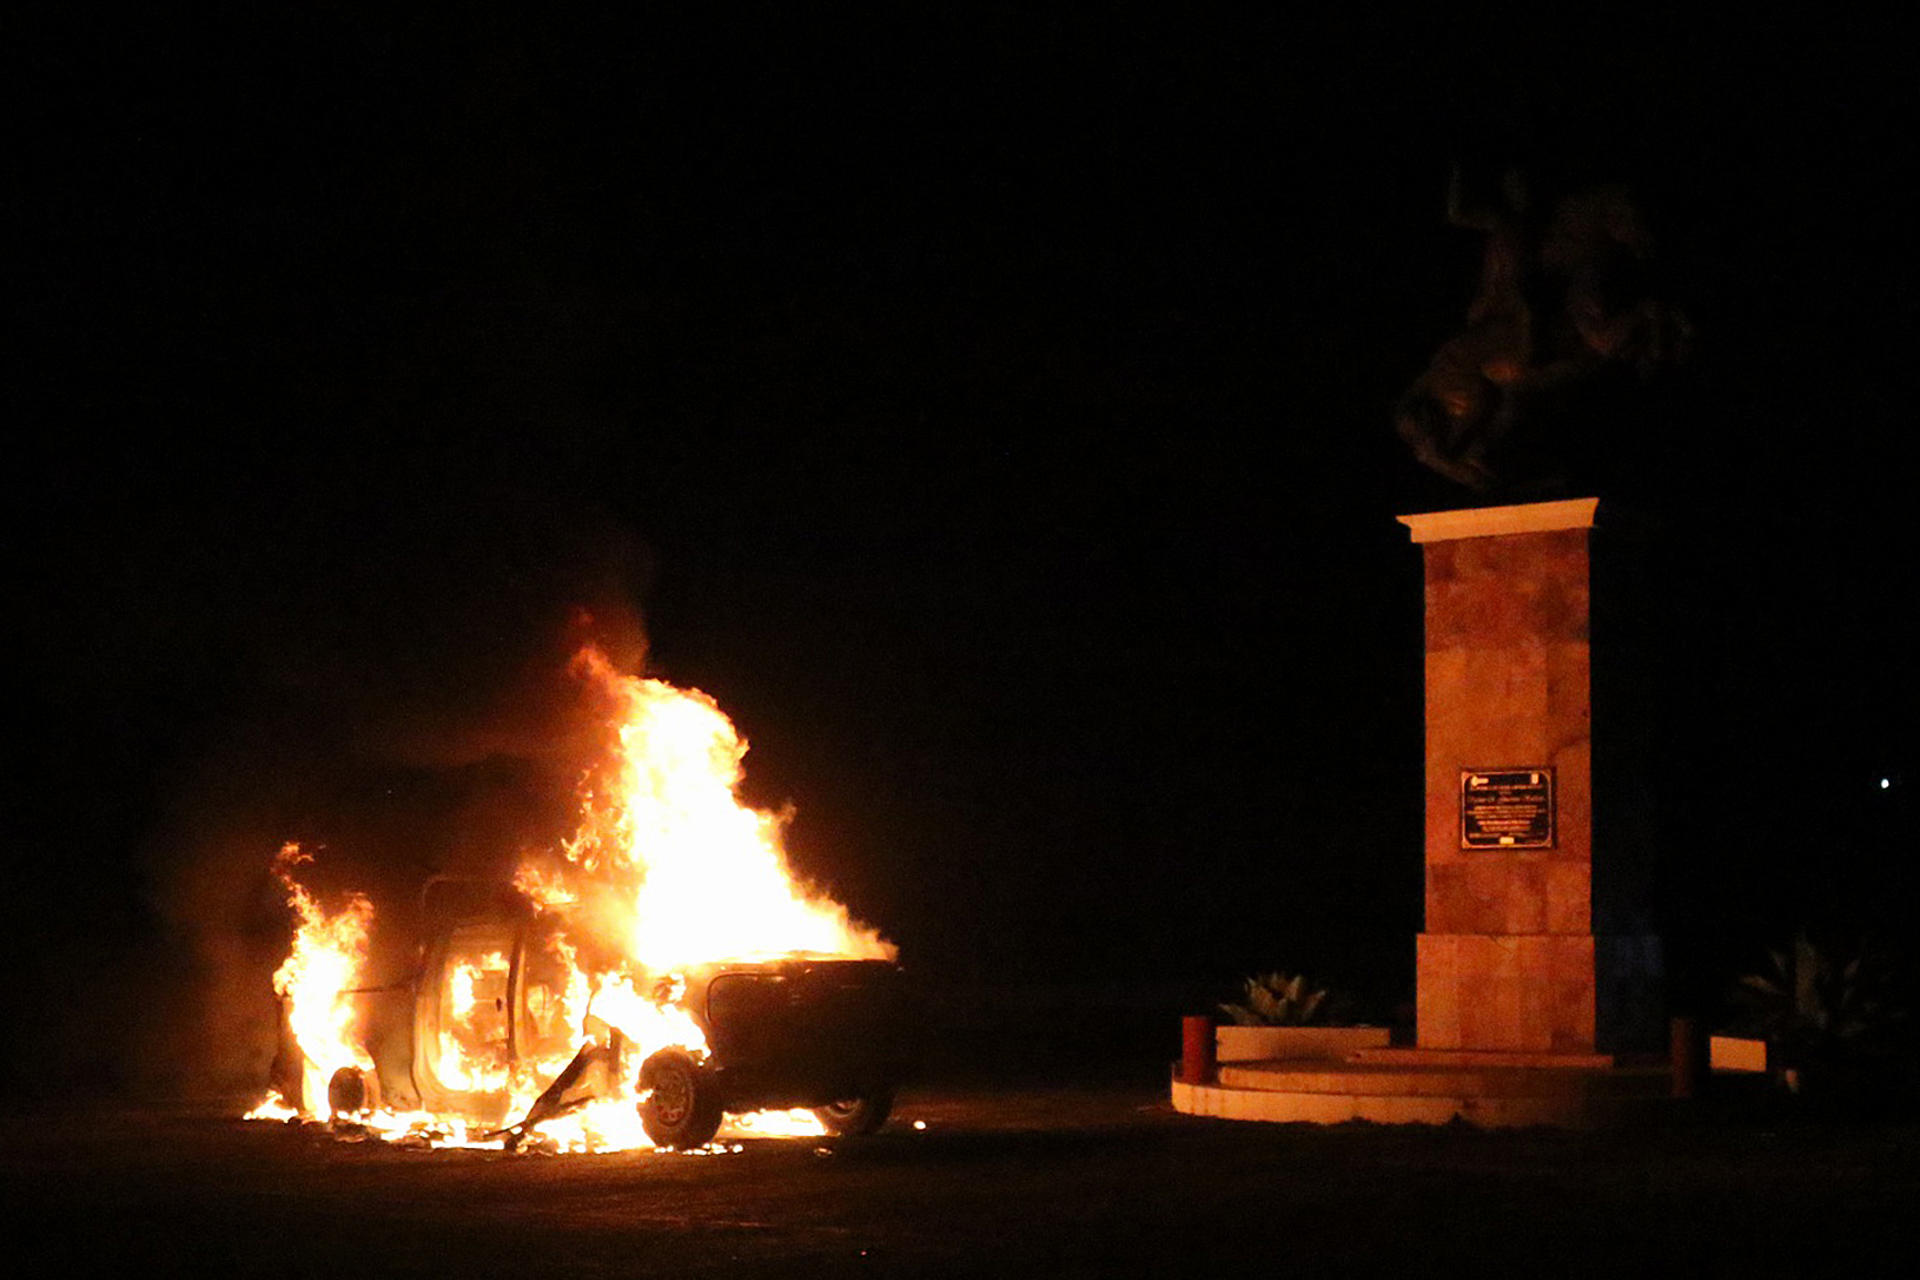 Fotografía de una patrulla de la Guardia Nacional (GN) incendiada por supuestos estudiantes normalistas este sábado en municipio de Tixtla, estado de Guerrero (México). EFE/José Luis de la Cruz